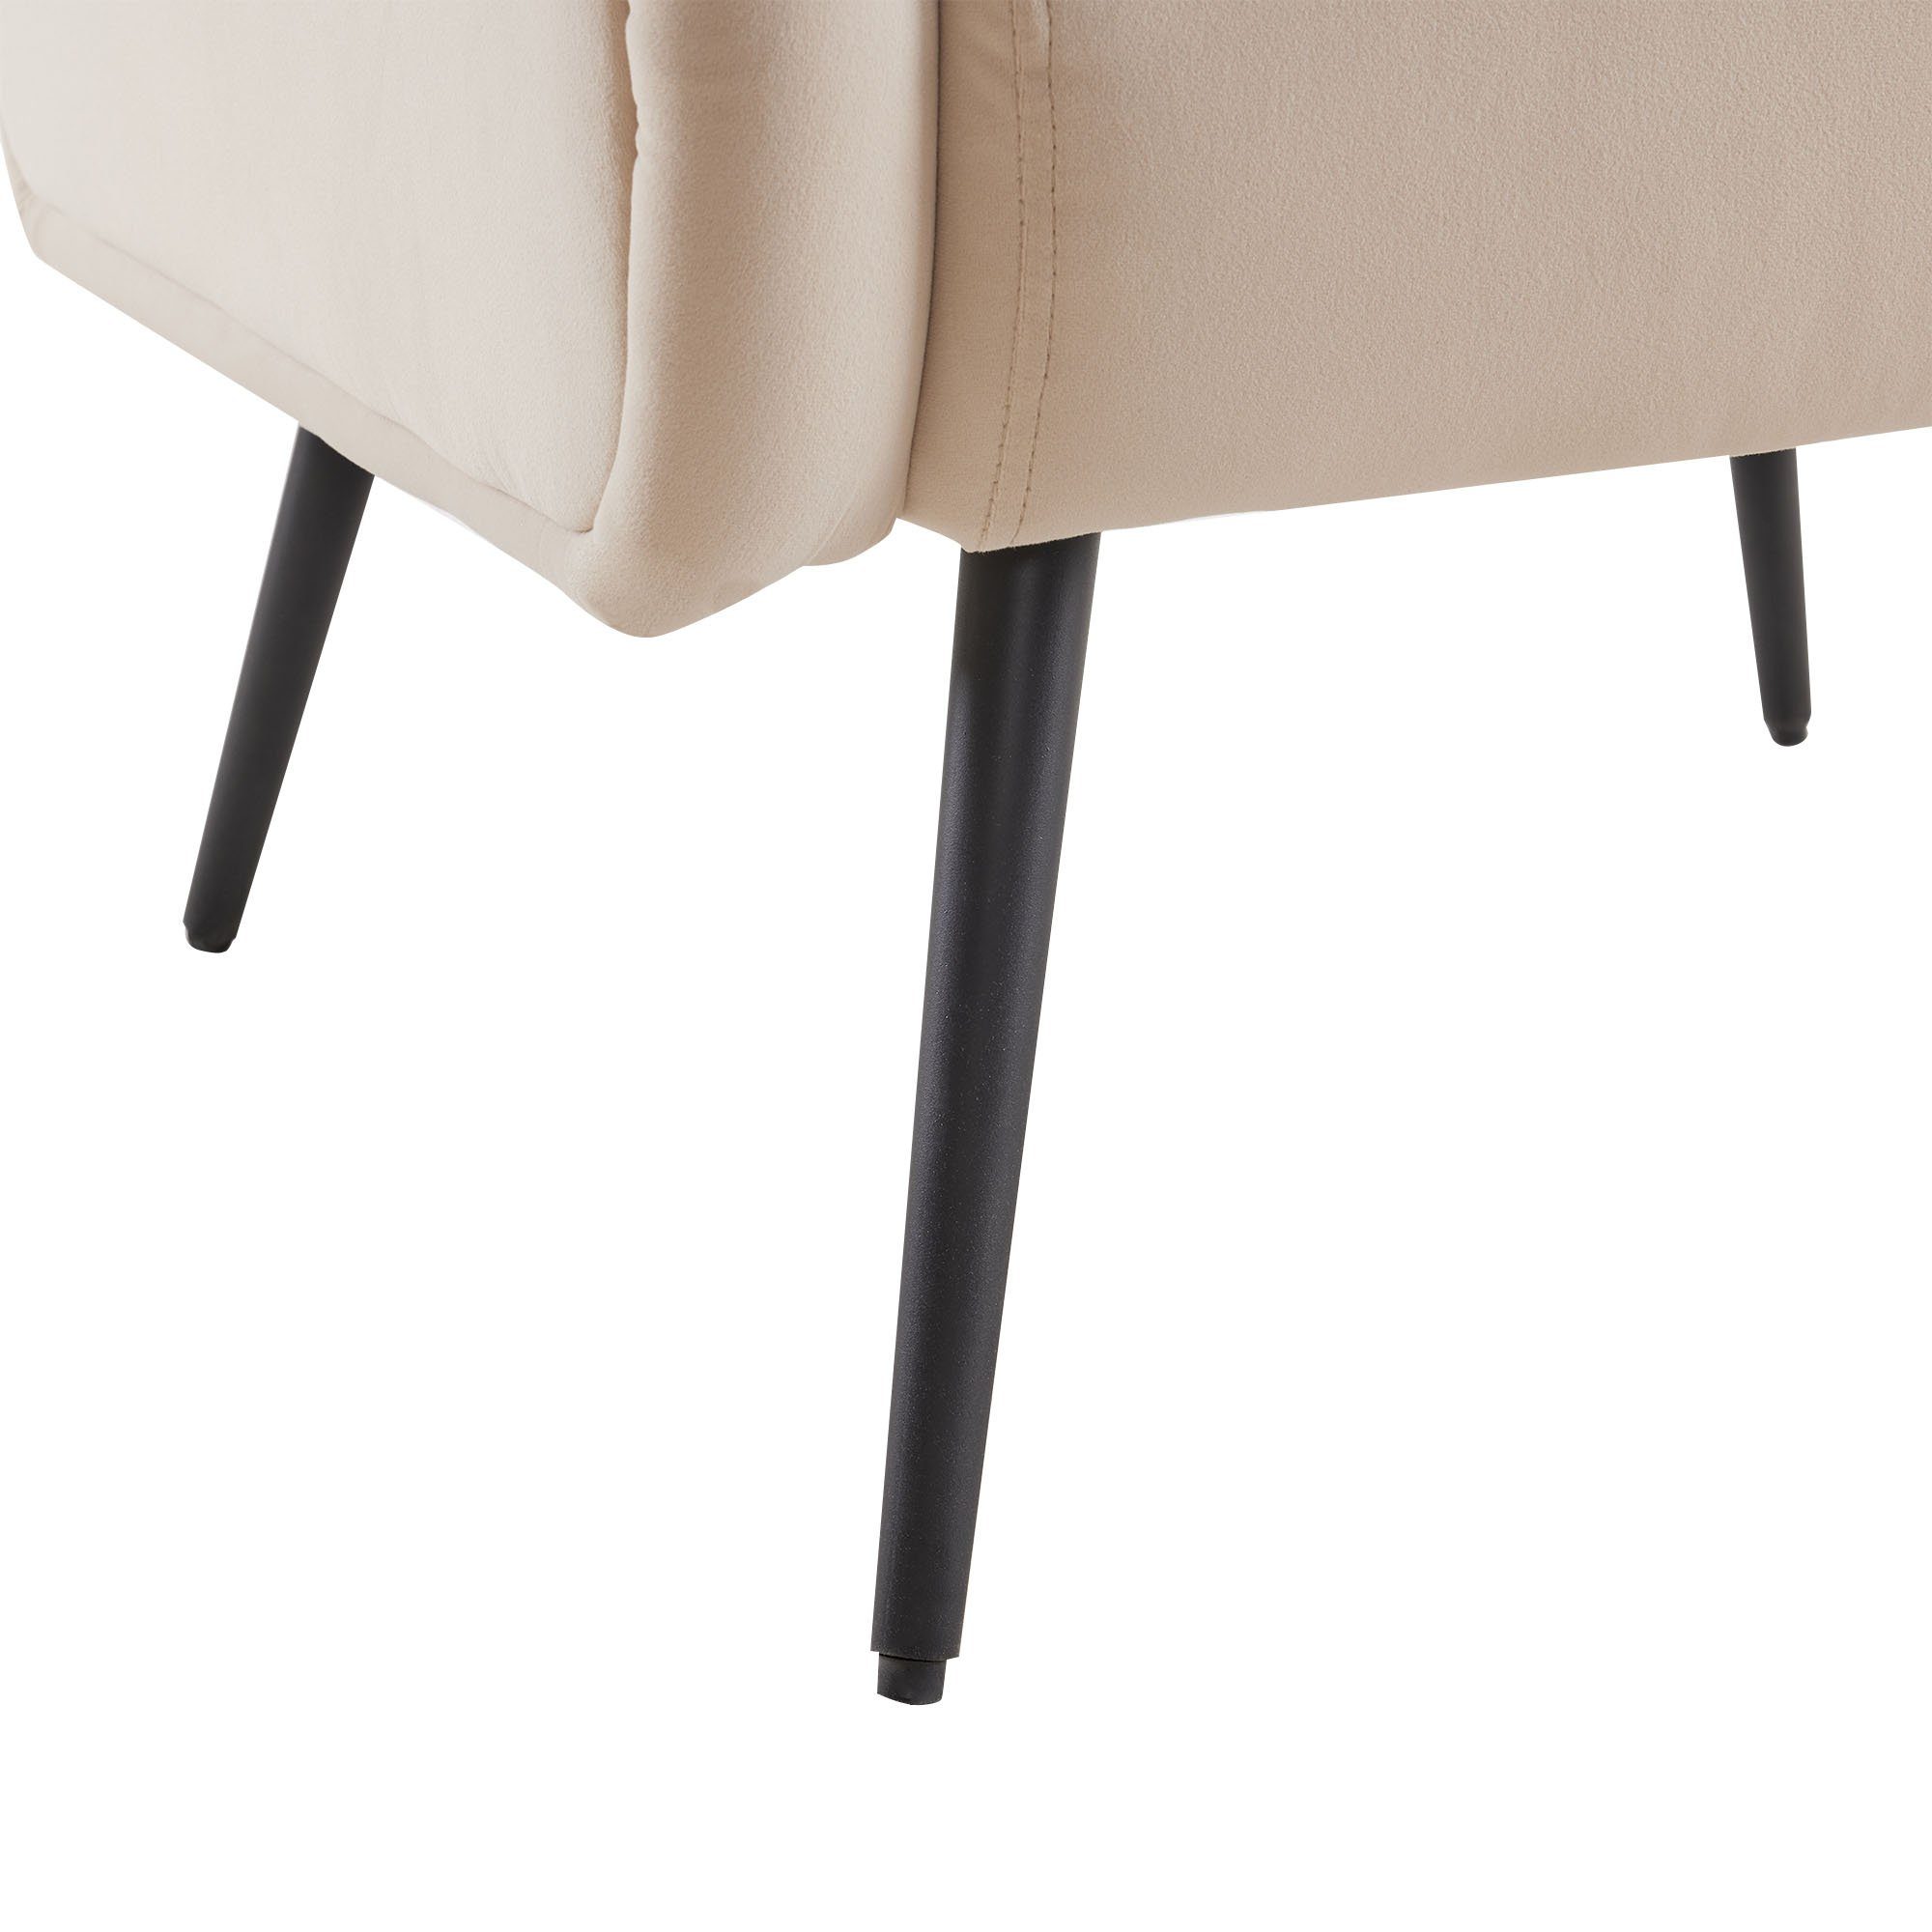 Samtstuhl Rückenlehne, Relaxsessel Stil, (Wohnzimmer-Freizeitsessel beige hoher Metallbeinarmlehne), mit mit im Polstersessel Sessel OKWISH Loungesessel modernen Samtstuhl,